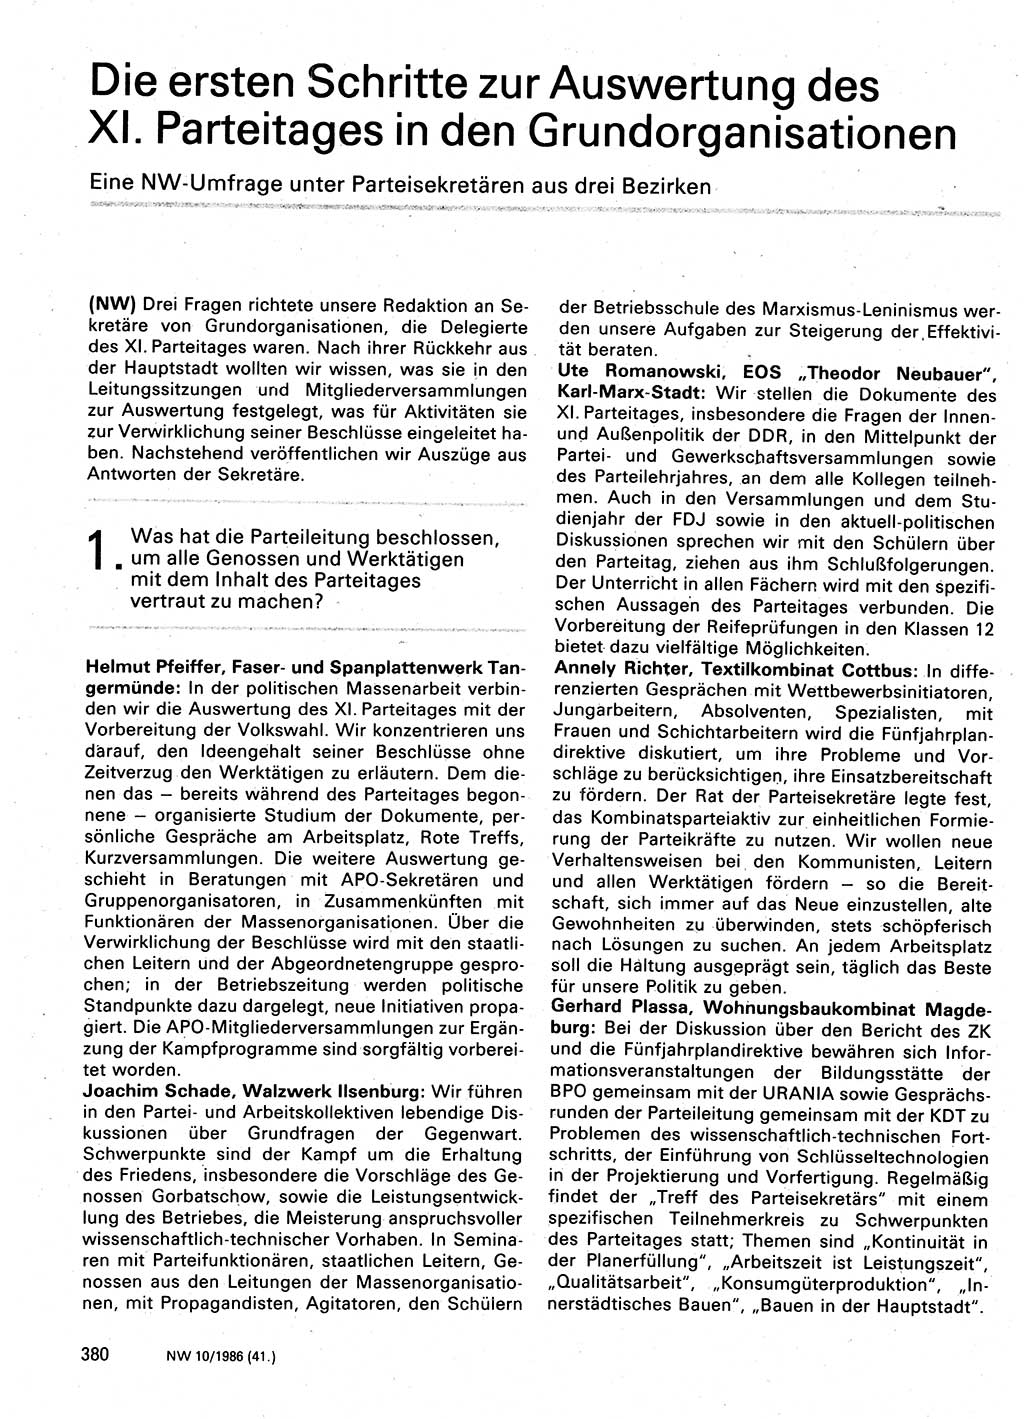 Neuer Weg (NW), Organ des Zentralkomitees (ZK) der SED (Sozialistische Einheitspartei Deutschlands) für Fragen des Parteilebens, 41. Jahrgang [Deutsche Demokratische Republik (DDR)] 1986, Seite 380 (NW ZK SED DDR 1986, S. 380)